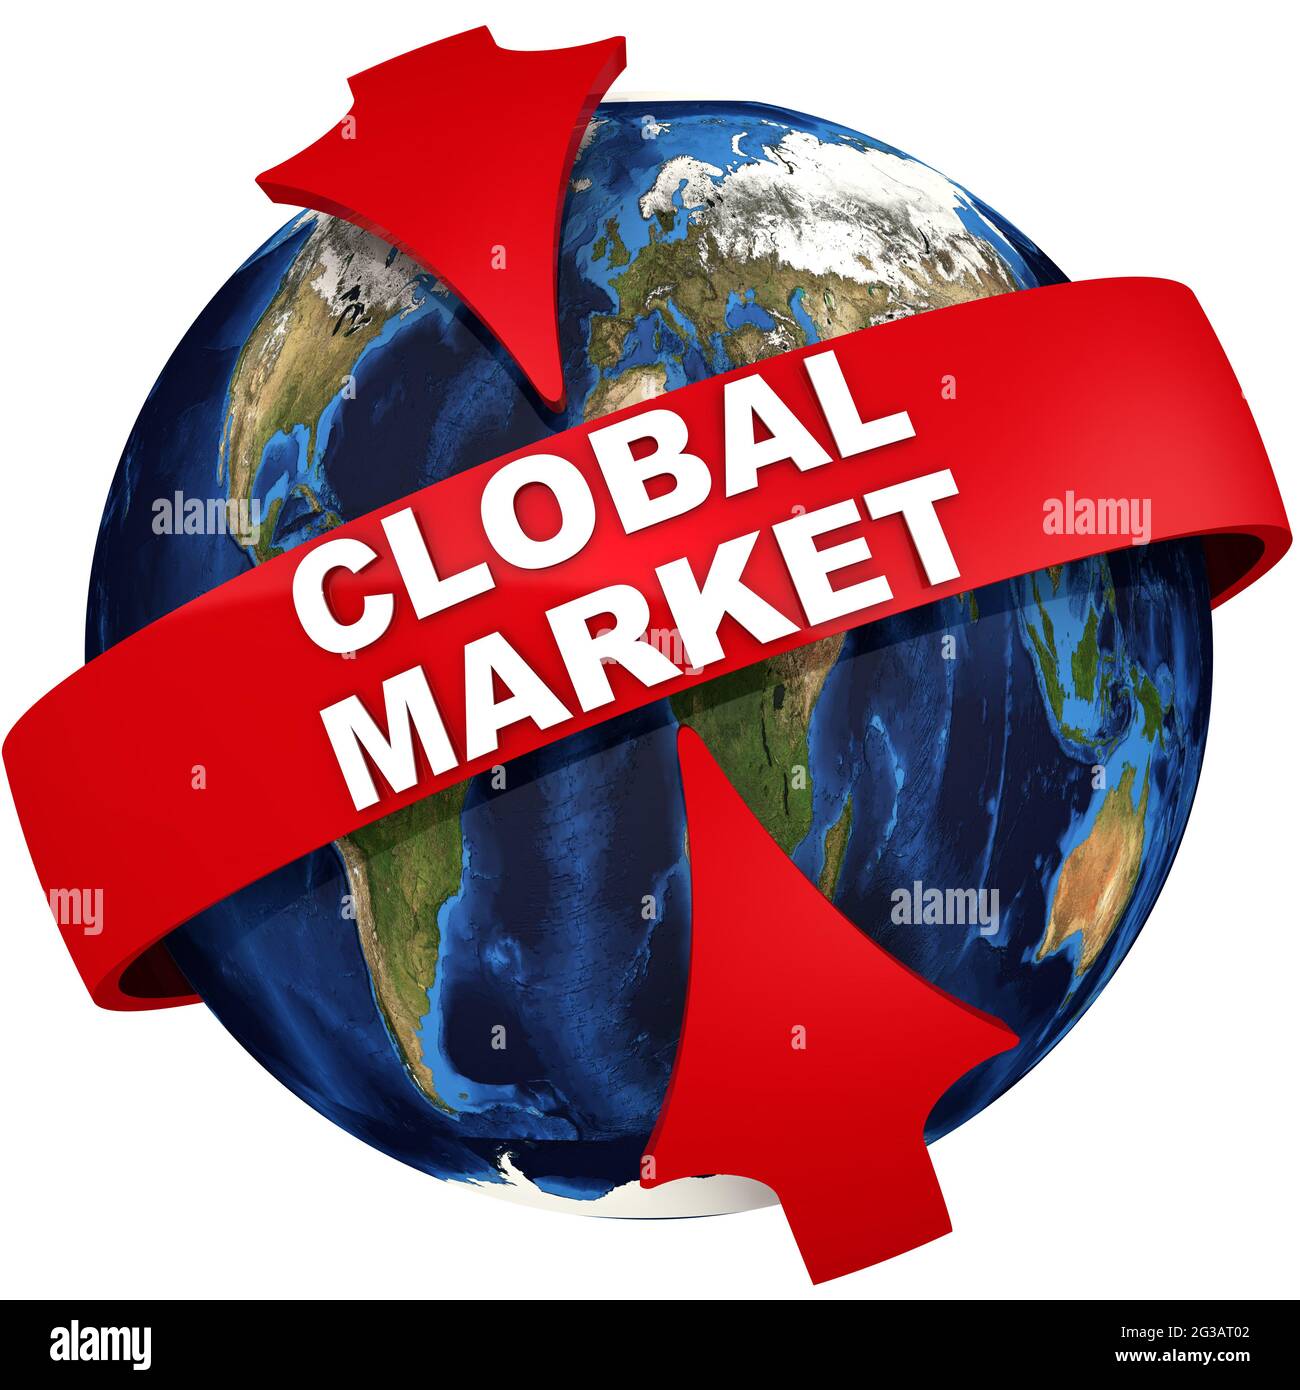  Marché mondial : l'activité de première introduction sur les bourses africaines pratiquement arrêtée 